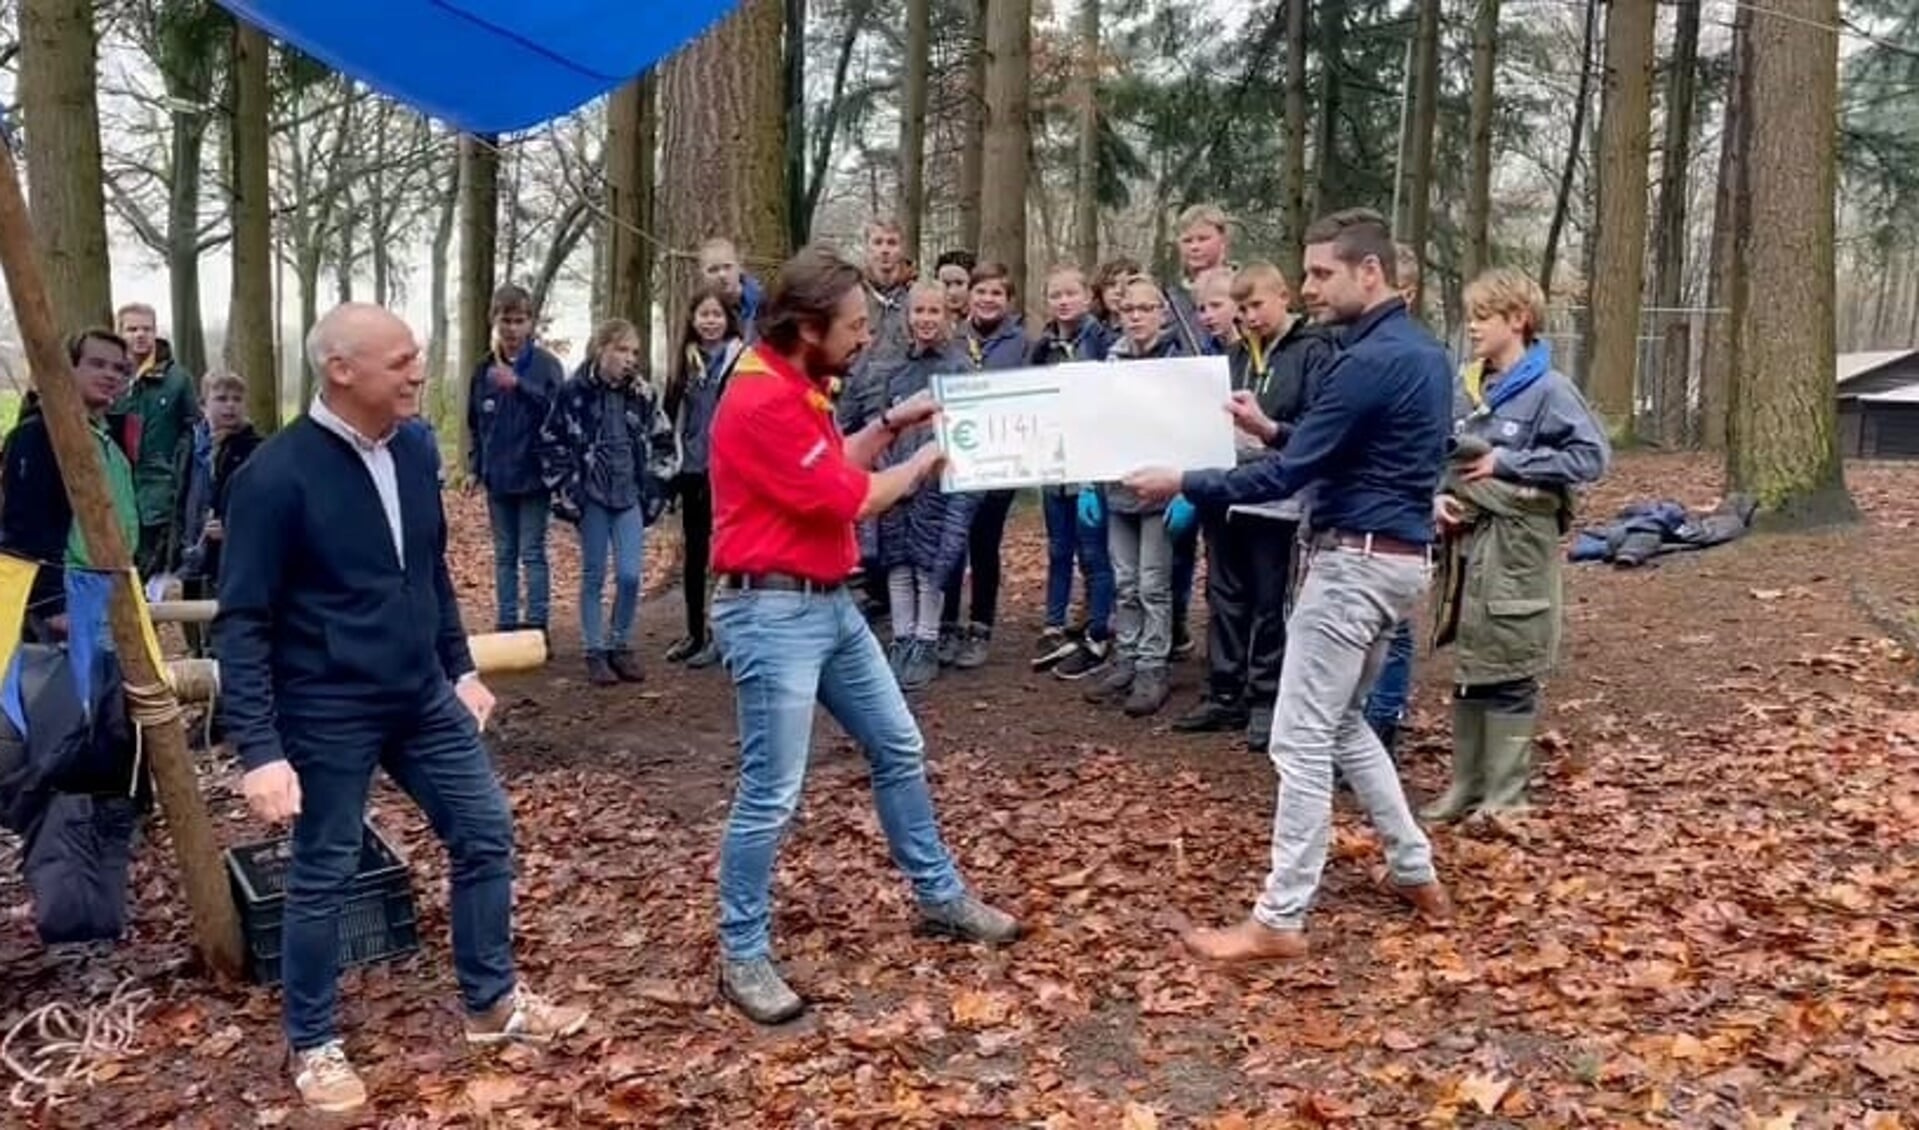 Voorzitter Bastiaan van de Noort had de primeur om de eerste cheque van Spaar je Club gezond in ontvangst te nemen. Foto: PR